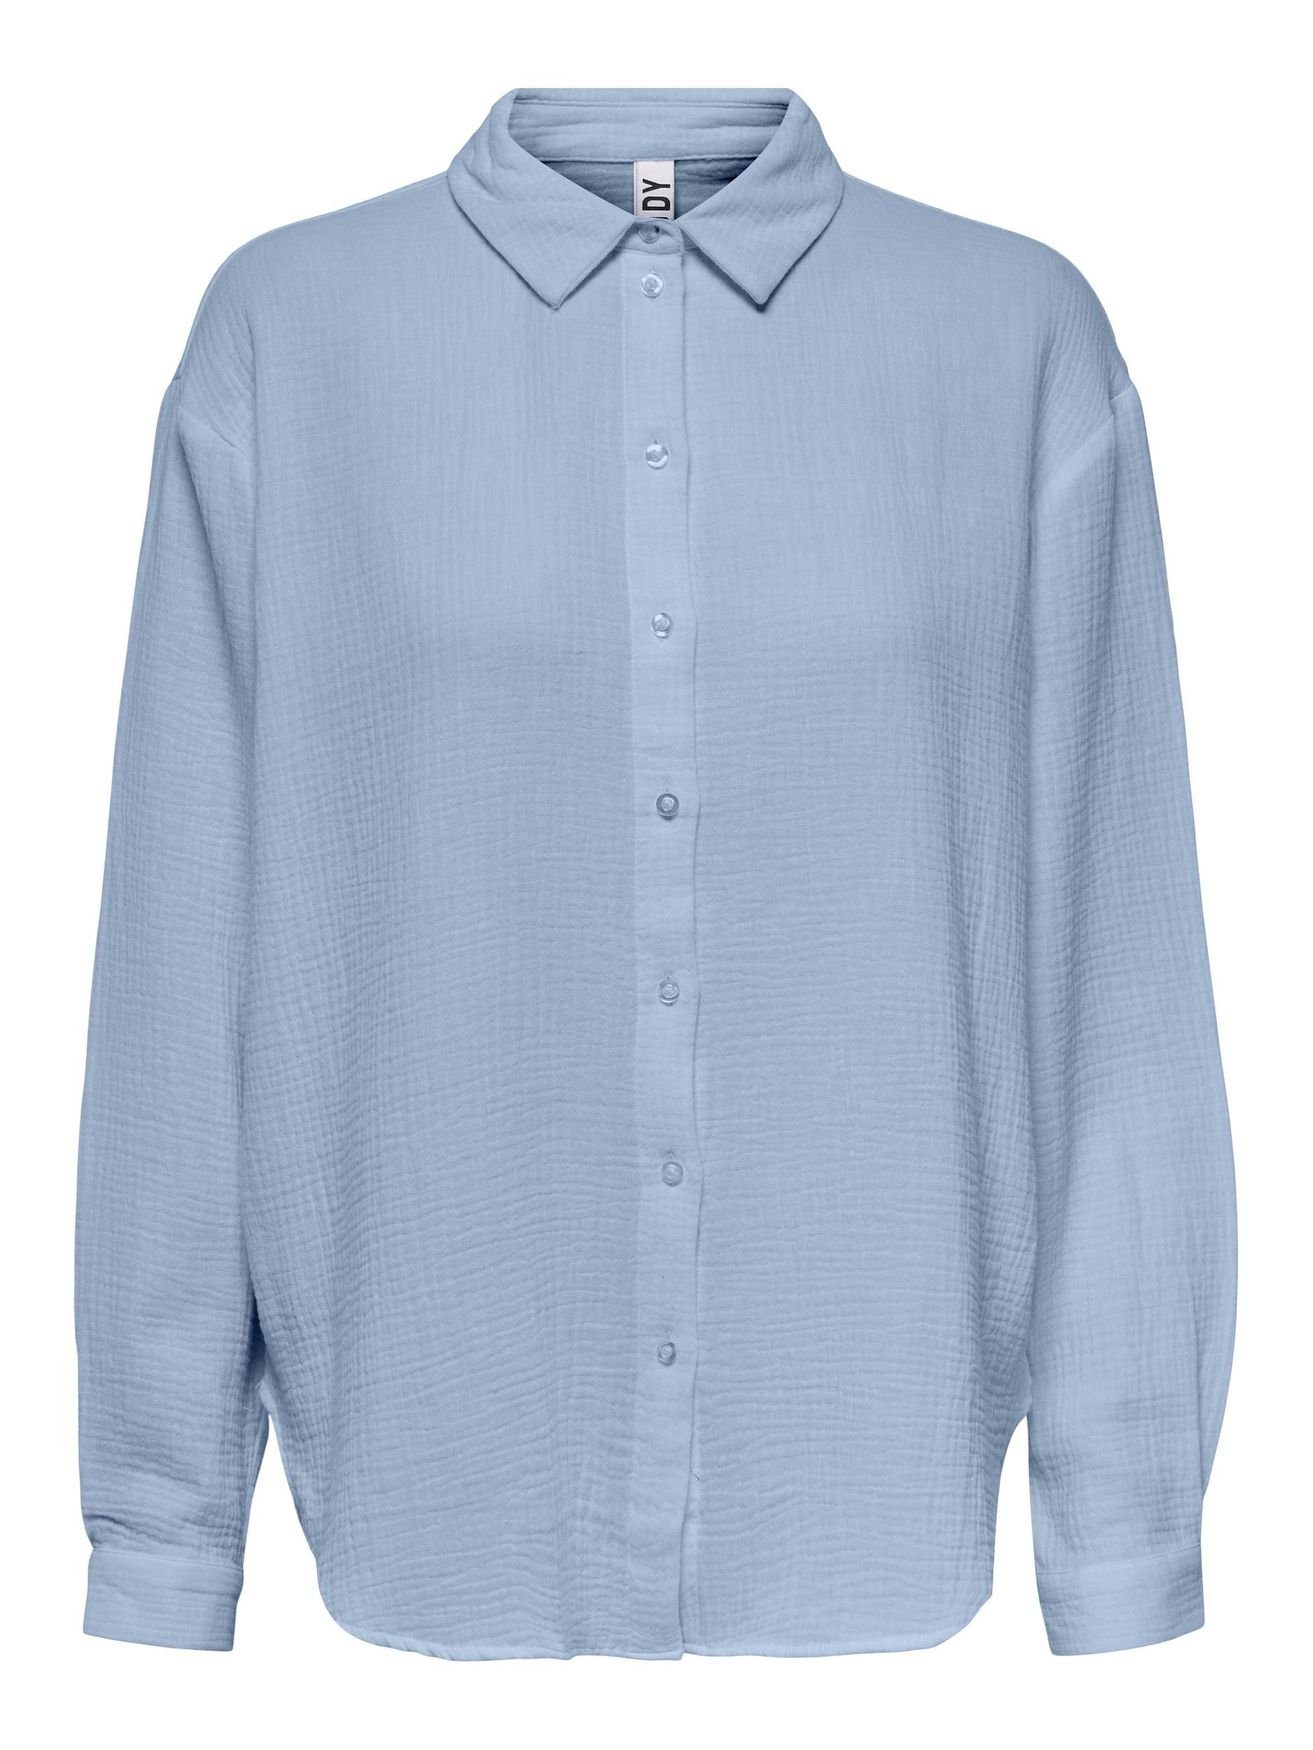 JACQUELINE de YONG Blusenshirt Elegantes Hemd Langarm Bluse in Knitteroptik JDYTHEIS 4944 in Blau